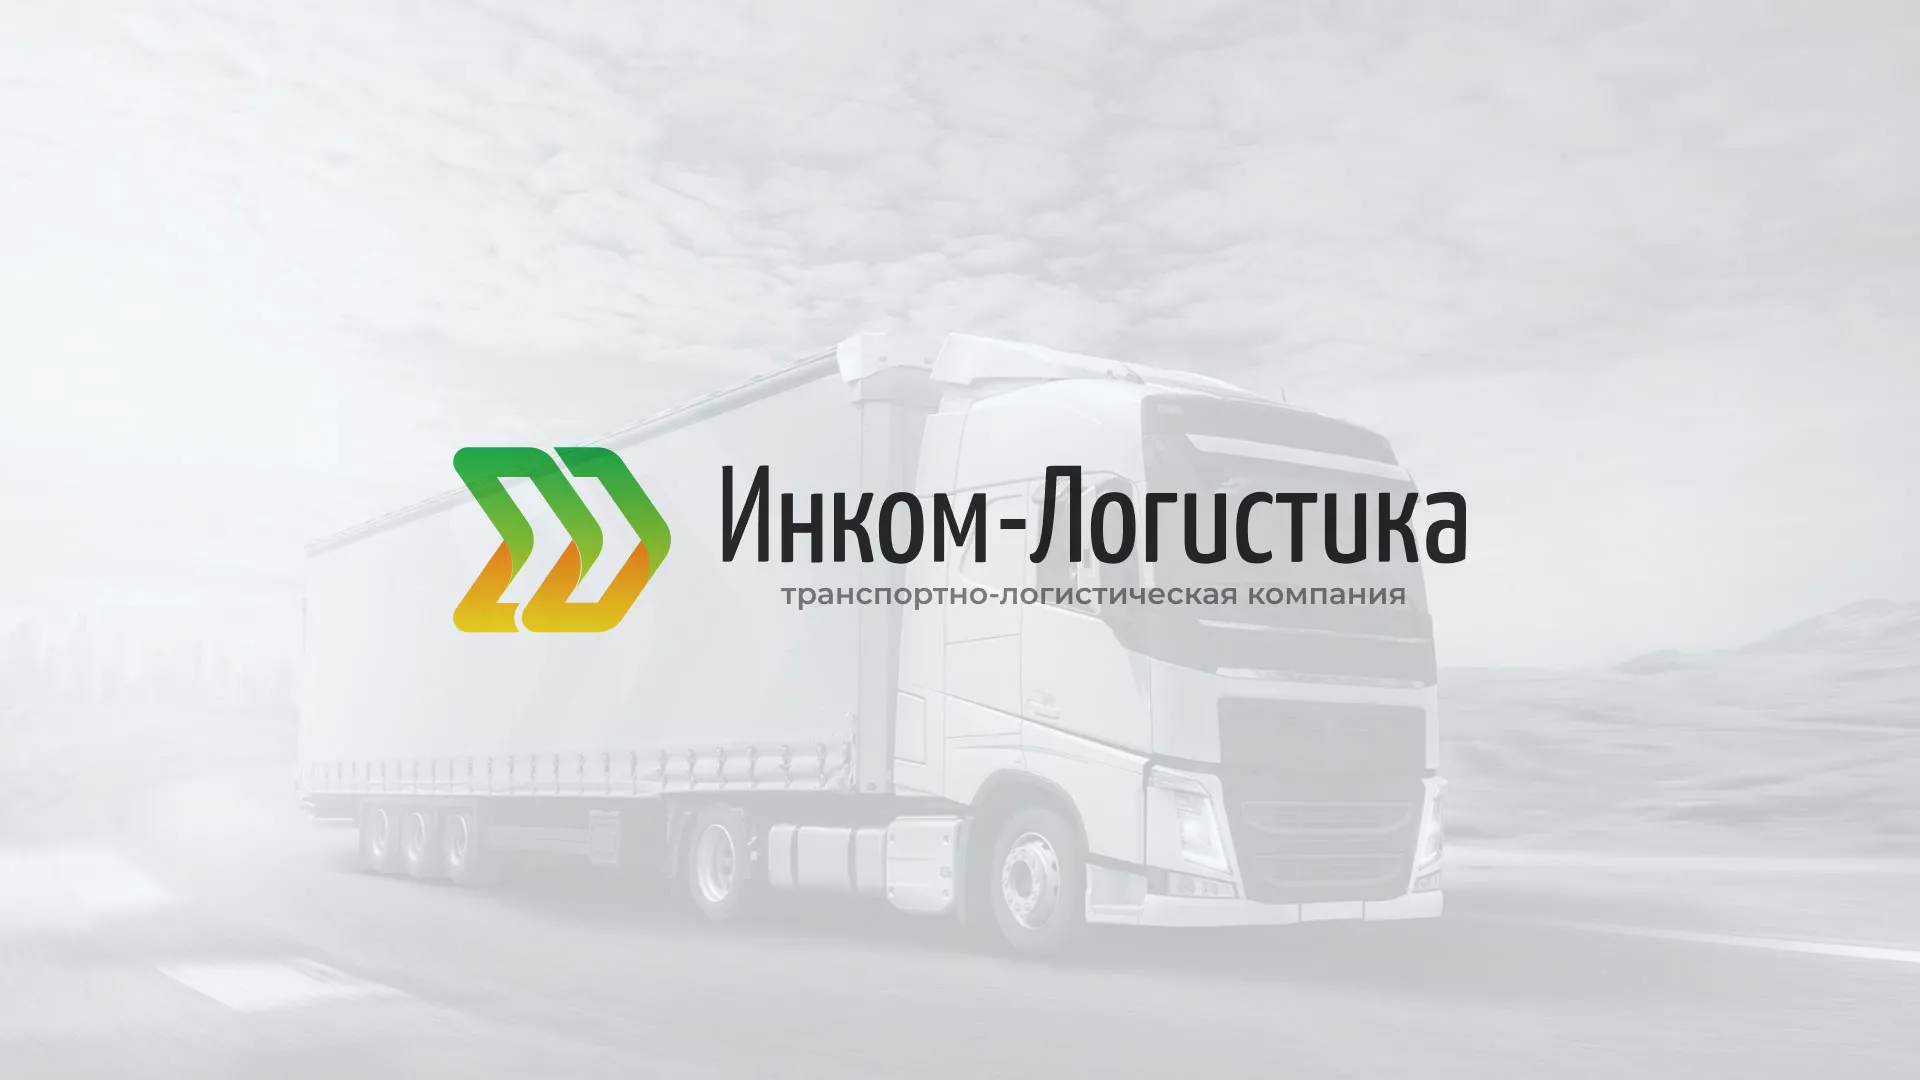 Разработка логотипа и сайта компании «Инком-Логистика» в Петергофе